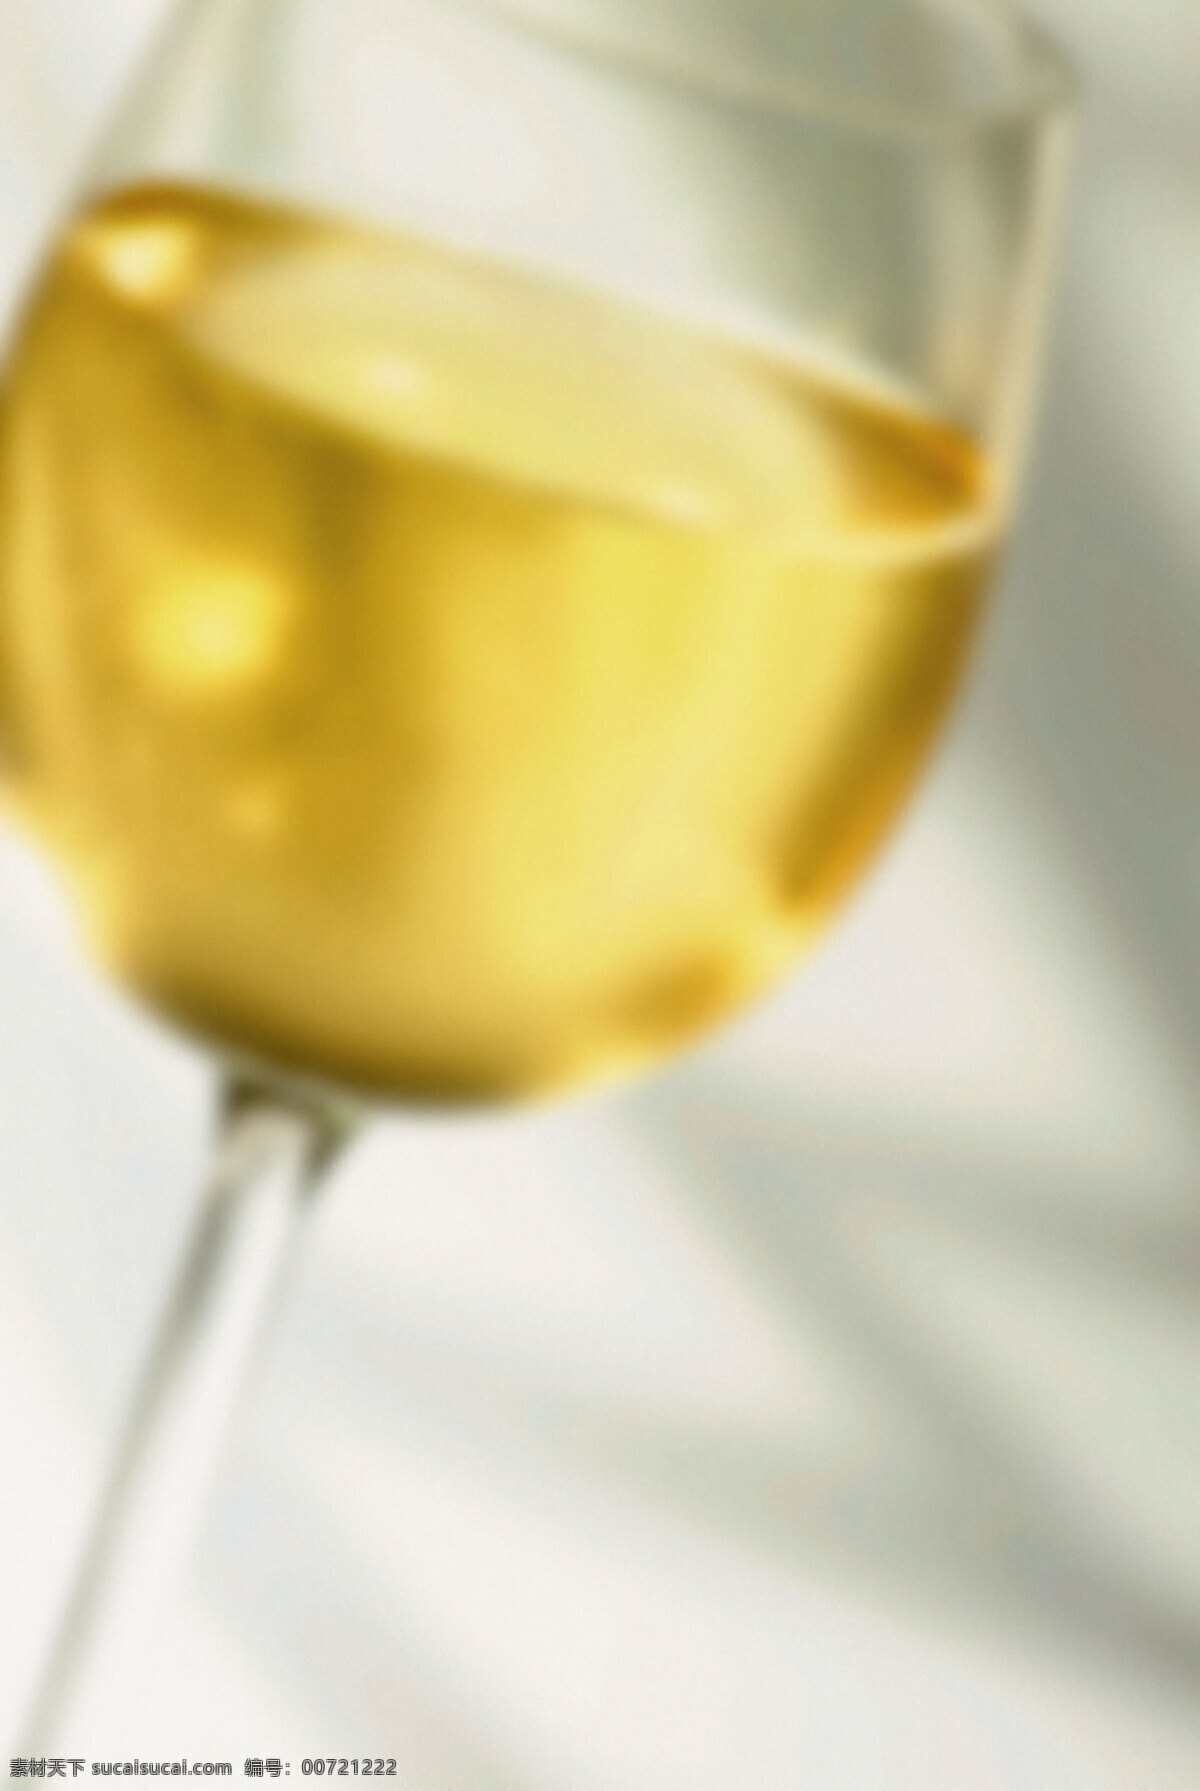 一杯 高脚杯 中 酒 高清图片 竖构图 浅金黄色的酒 美酒 葡萄酒 酒杯 浪漫 情调 创意设计 一杯酒 玻璃杯 琥珀色的酒 不对焦的 模糊地 酒类图片 餐饮美食